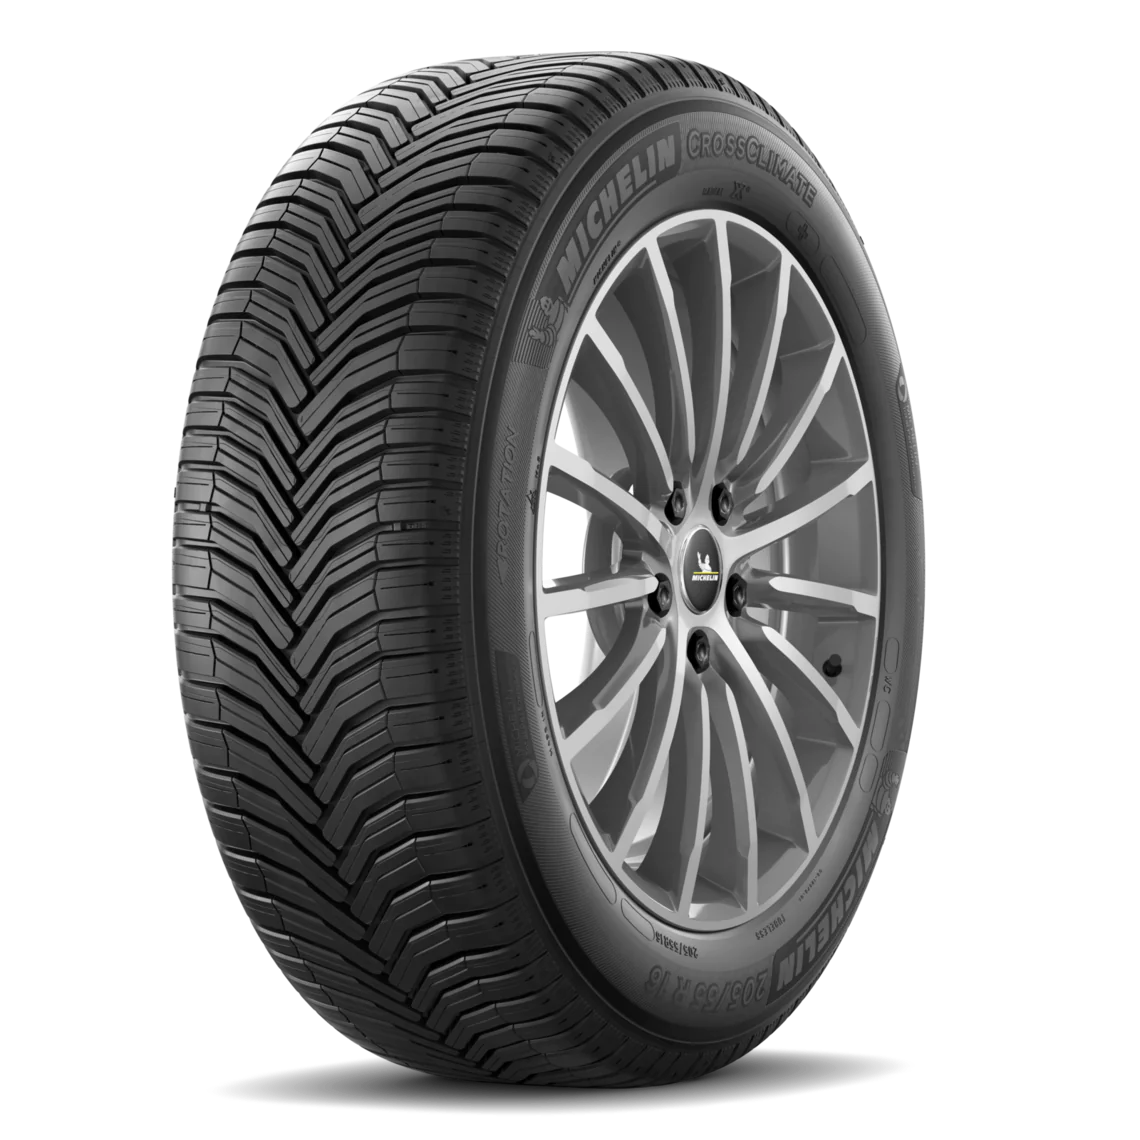 Michelin Michelin 225/55 R18 98V CROSSCLIMATE 2 pneumatici nuovi All Season 